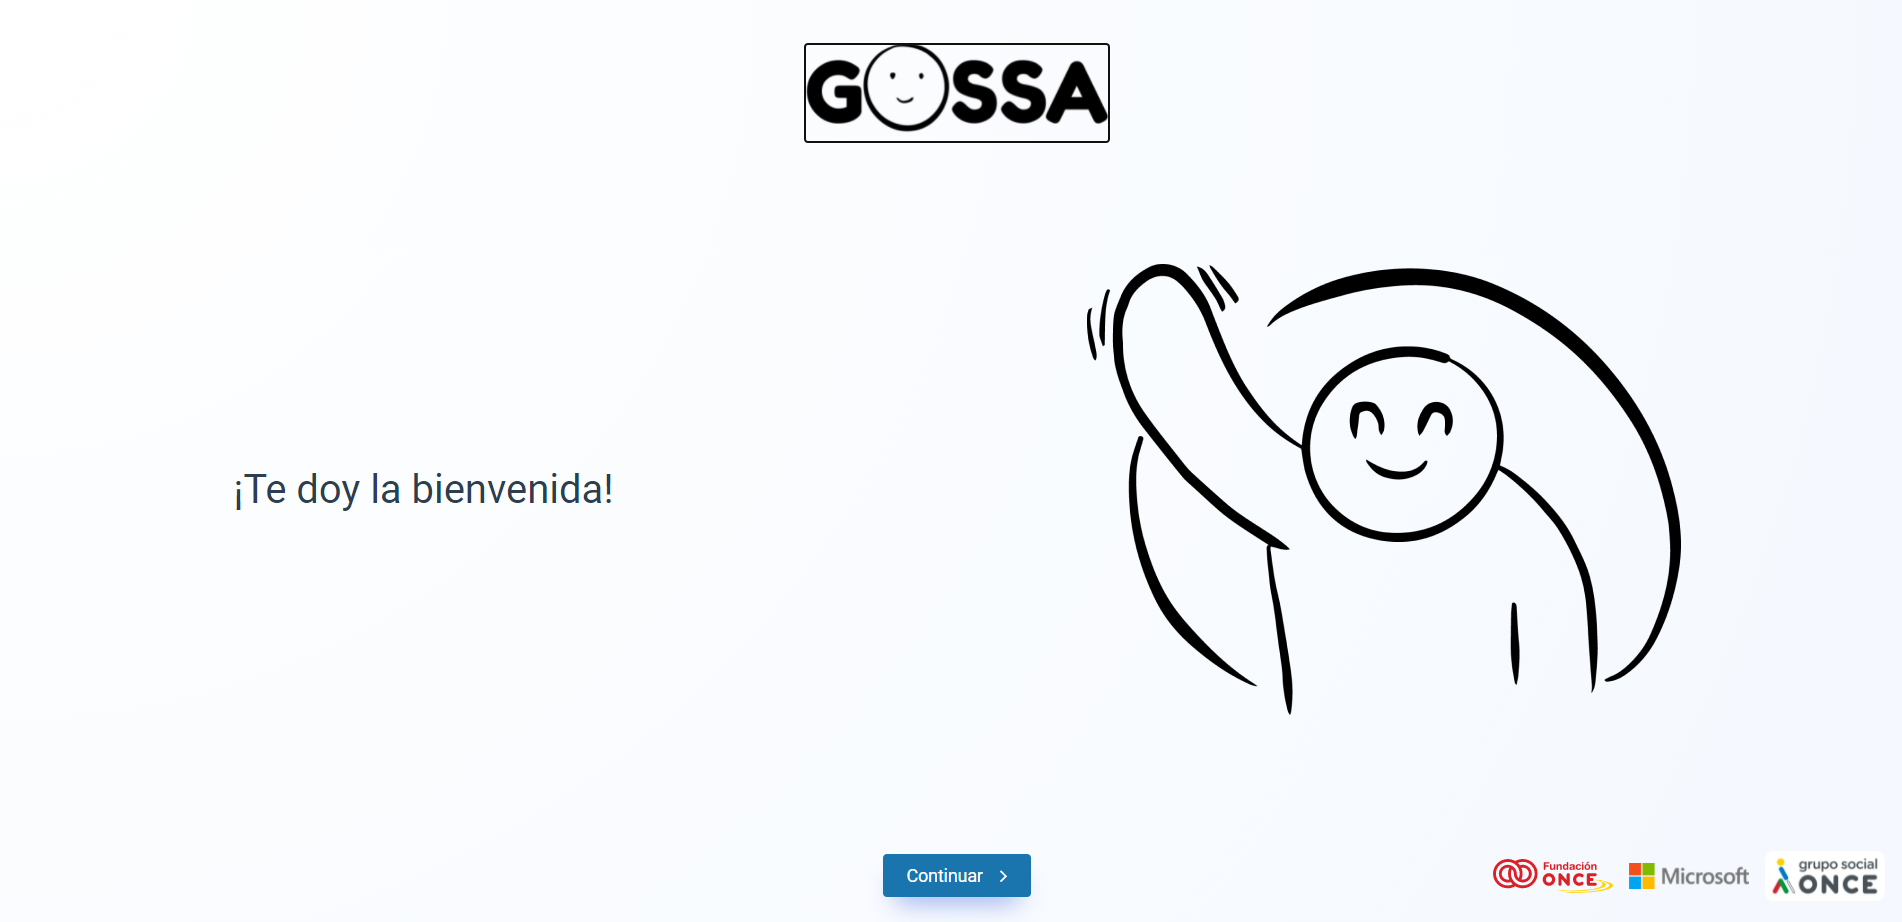 Bienvenida del proyecto GOSSA